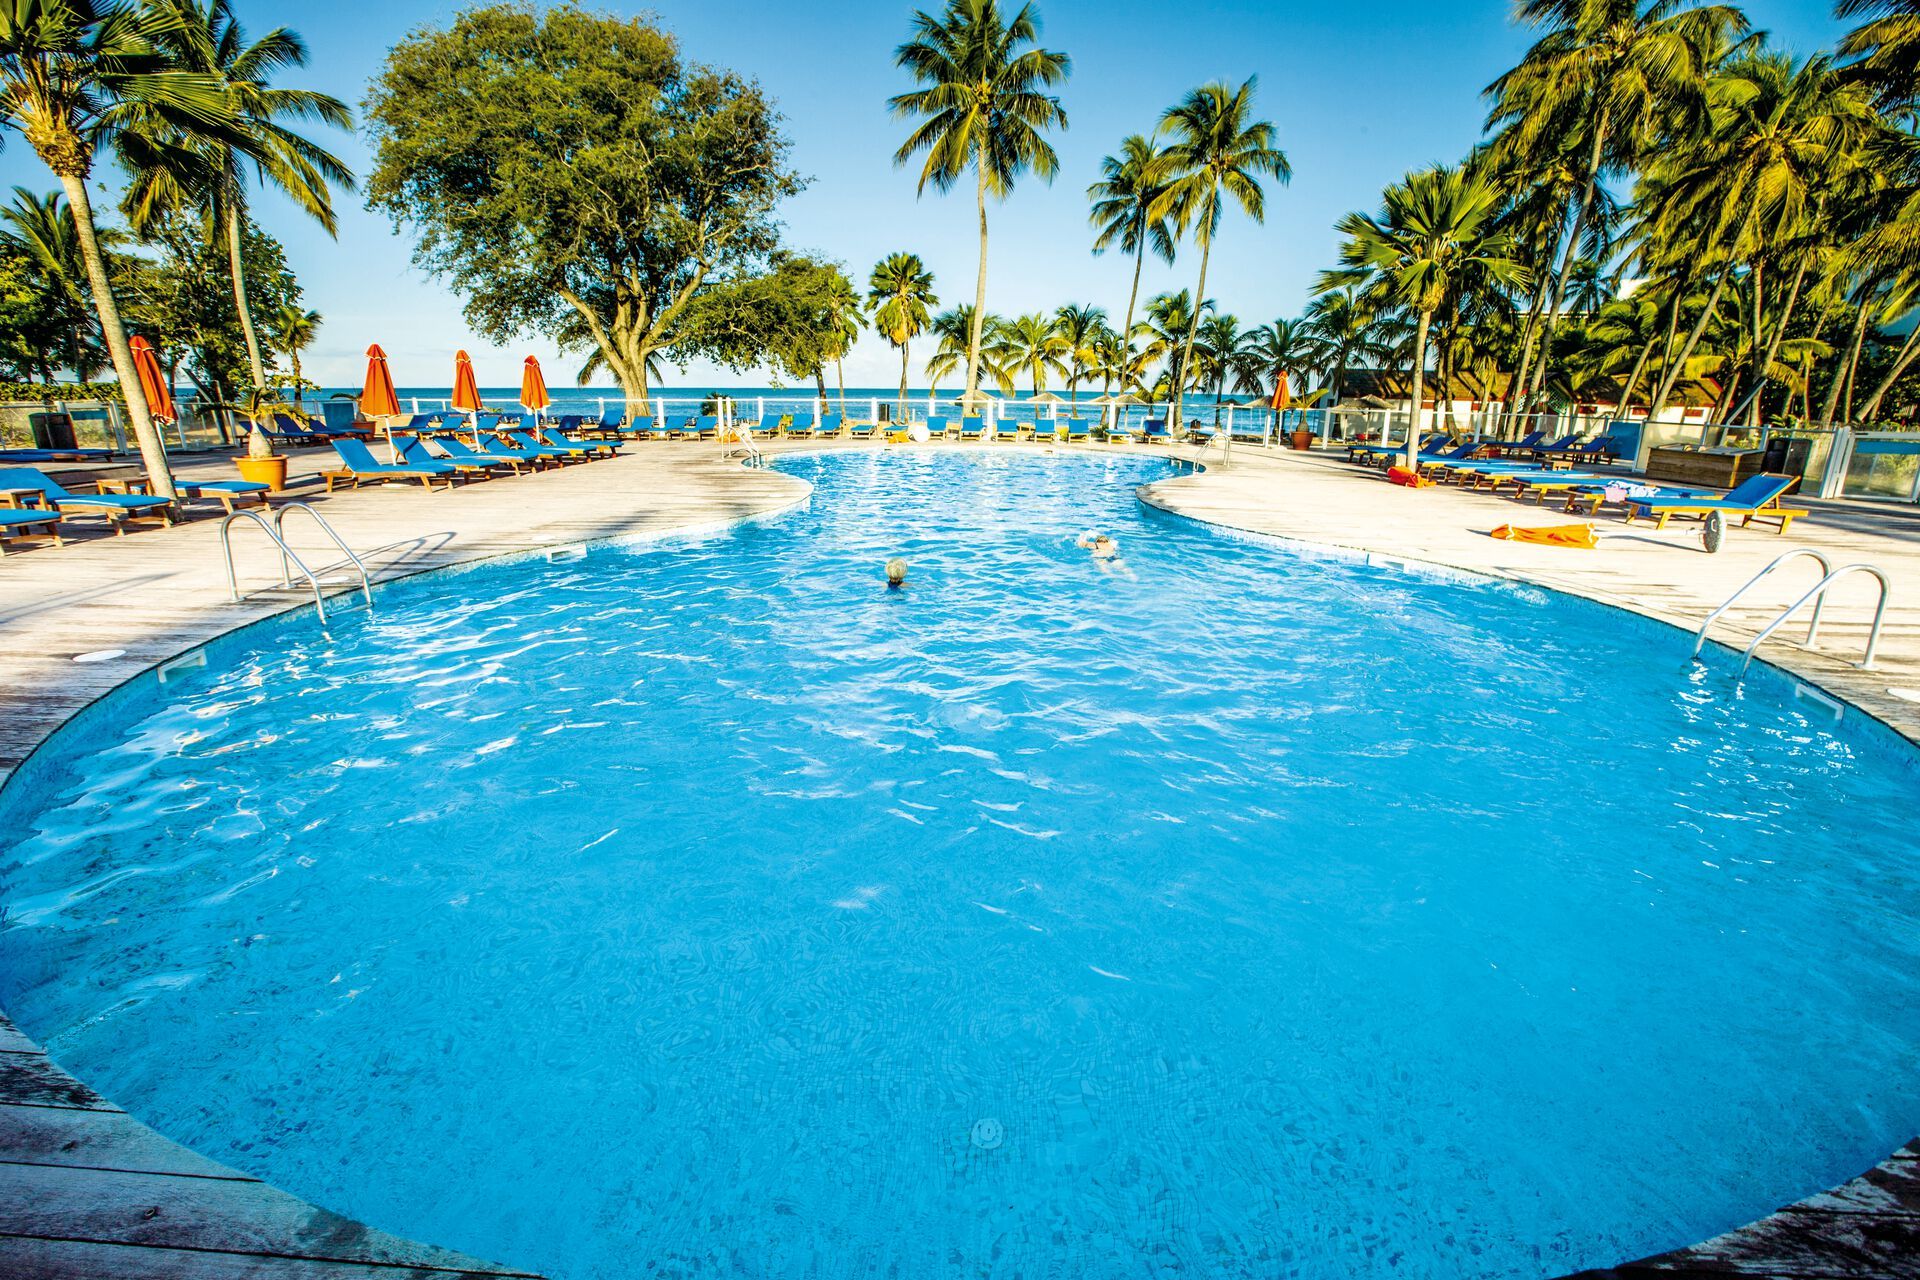 Guadeloupe - Hôtel Langley Resort Fort Royal 3* - Bungalow